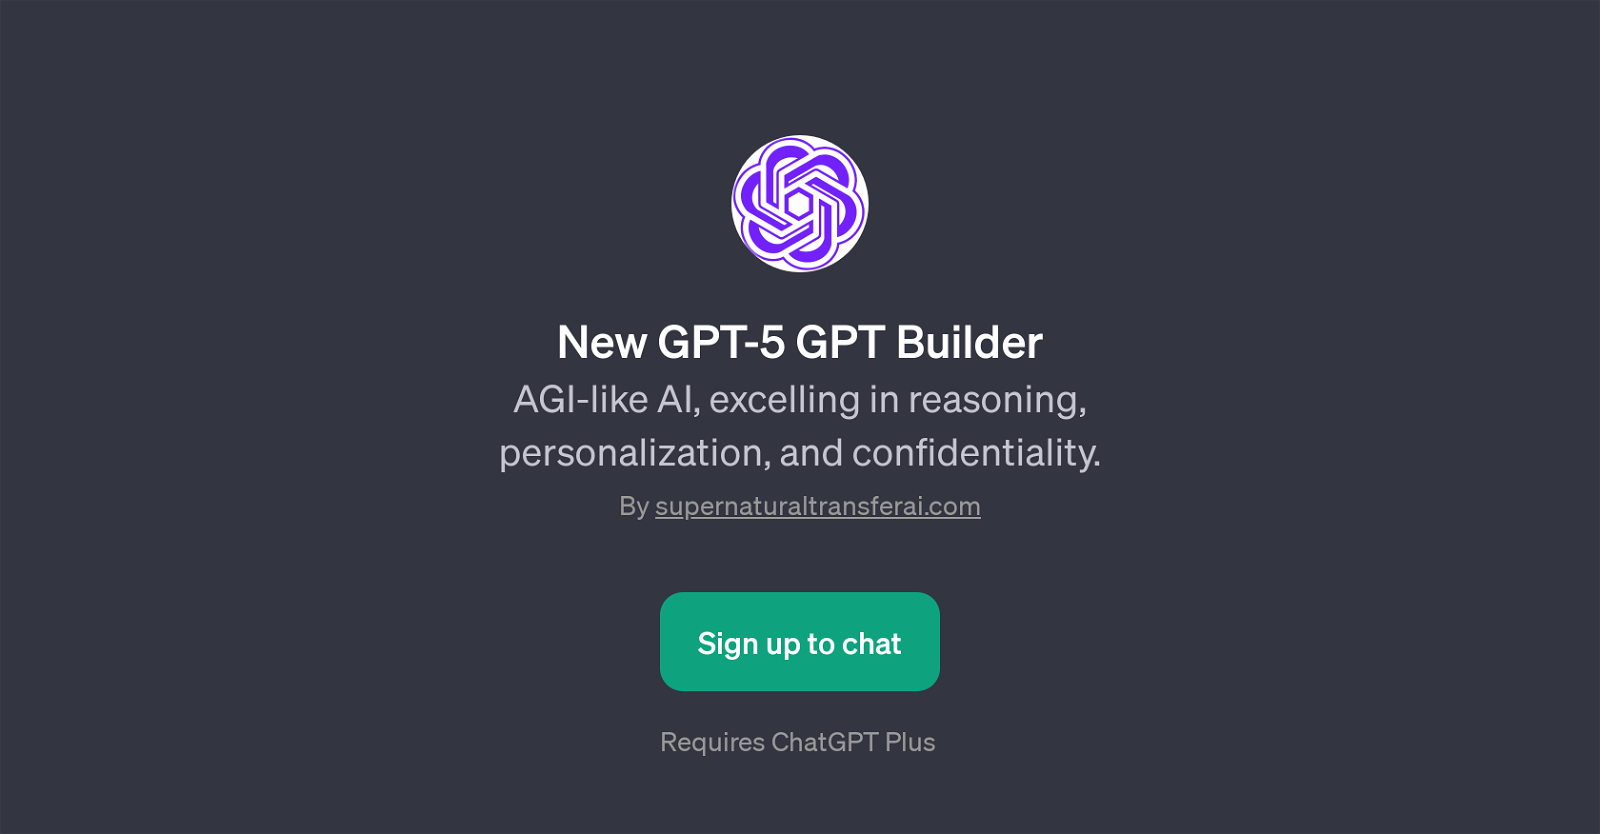 New GPT-5 GPT Builder website